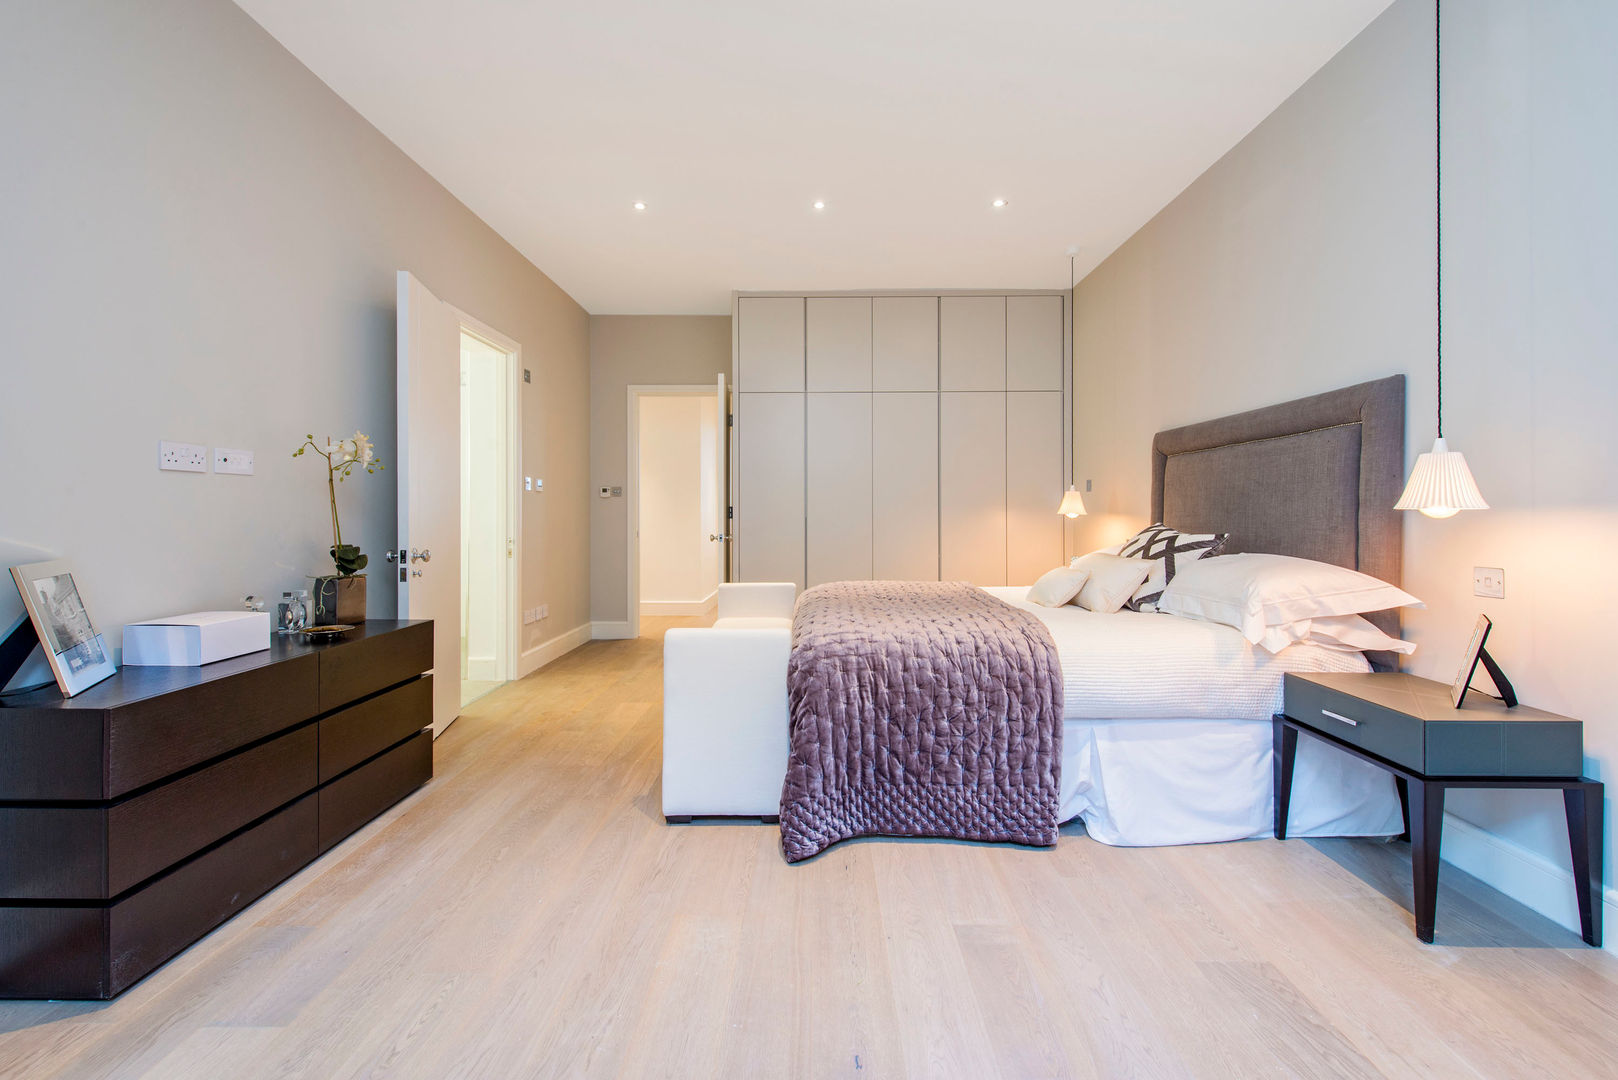 Bedroom in greys Balance Property Ltd Dormitorios modernos: Ideas, imágenes y decoración